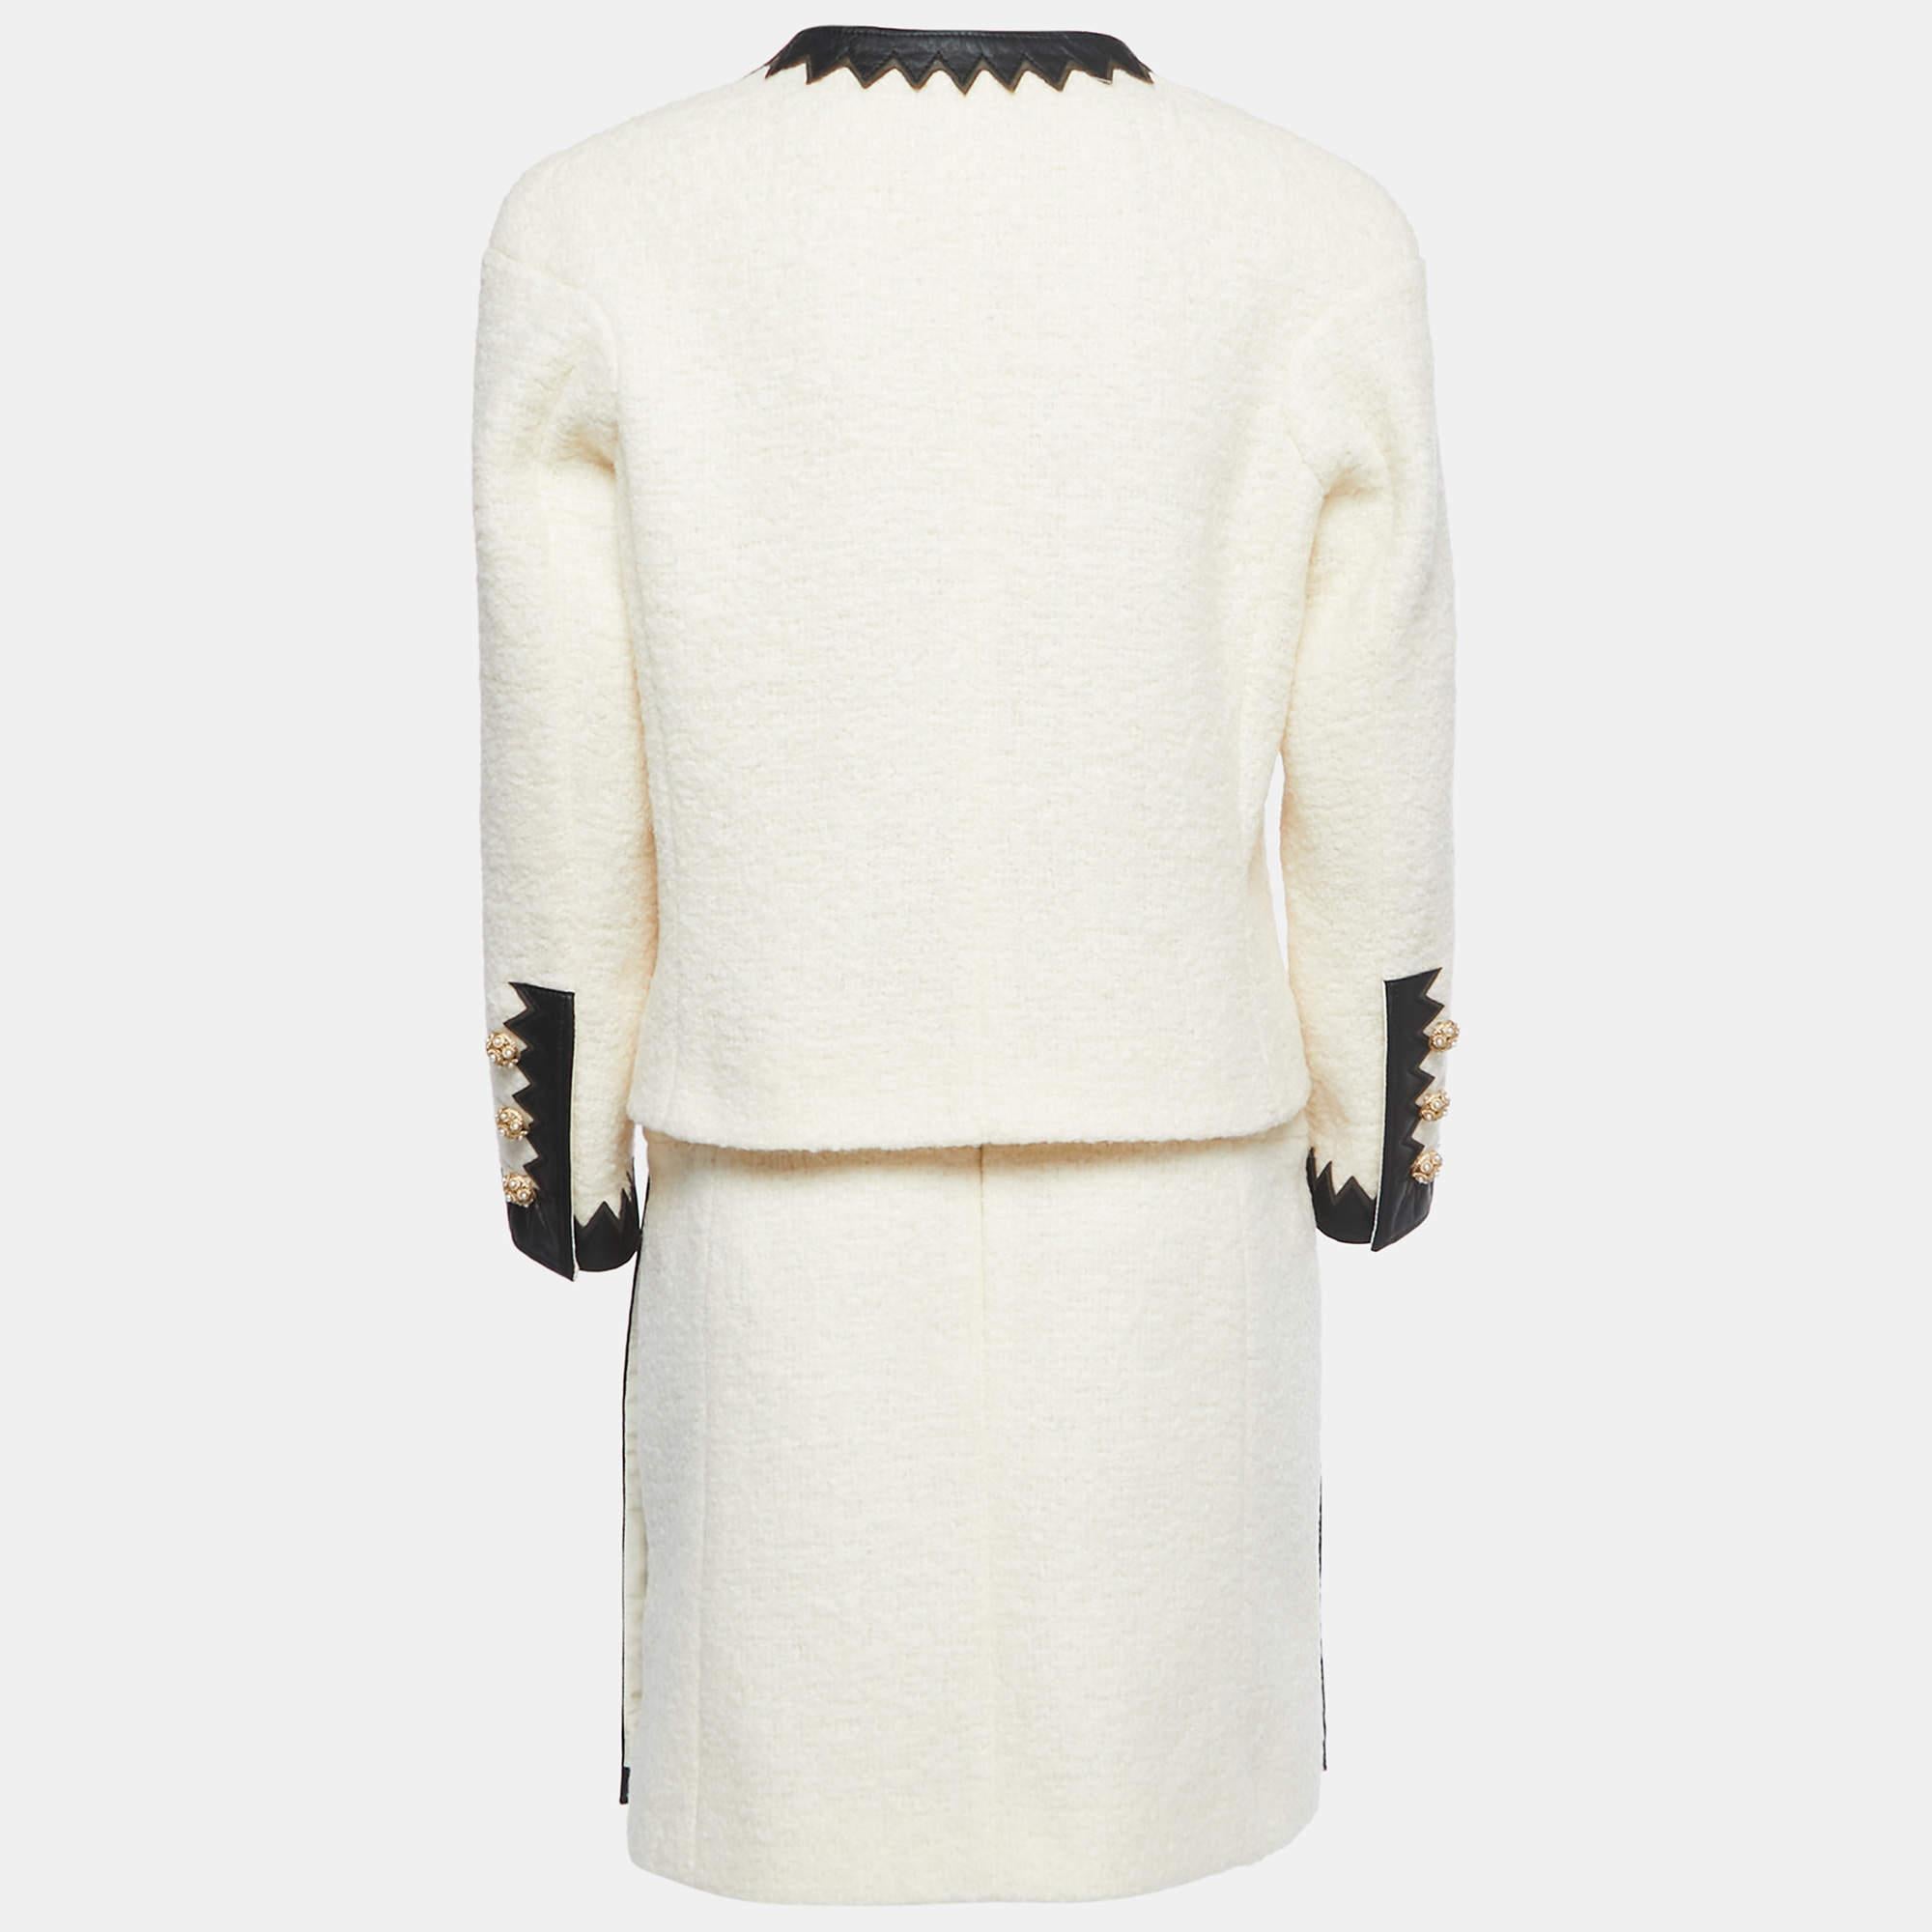 Le tailleur Chanel respire l'élégance avec son tissu en laine bouclée de couleur crème. Les bordures en cuir ajoutent une touche de luxe en rehaussant les revers et les poches de la veste. Un ensemble sophistiqué qui allie le style classique de